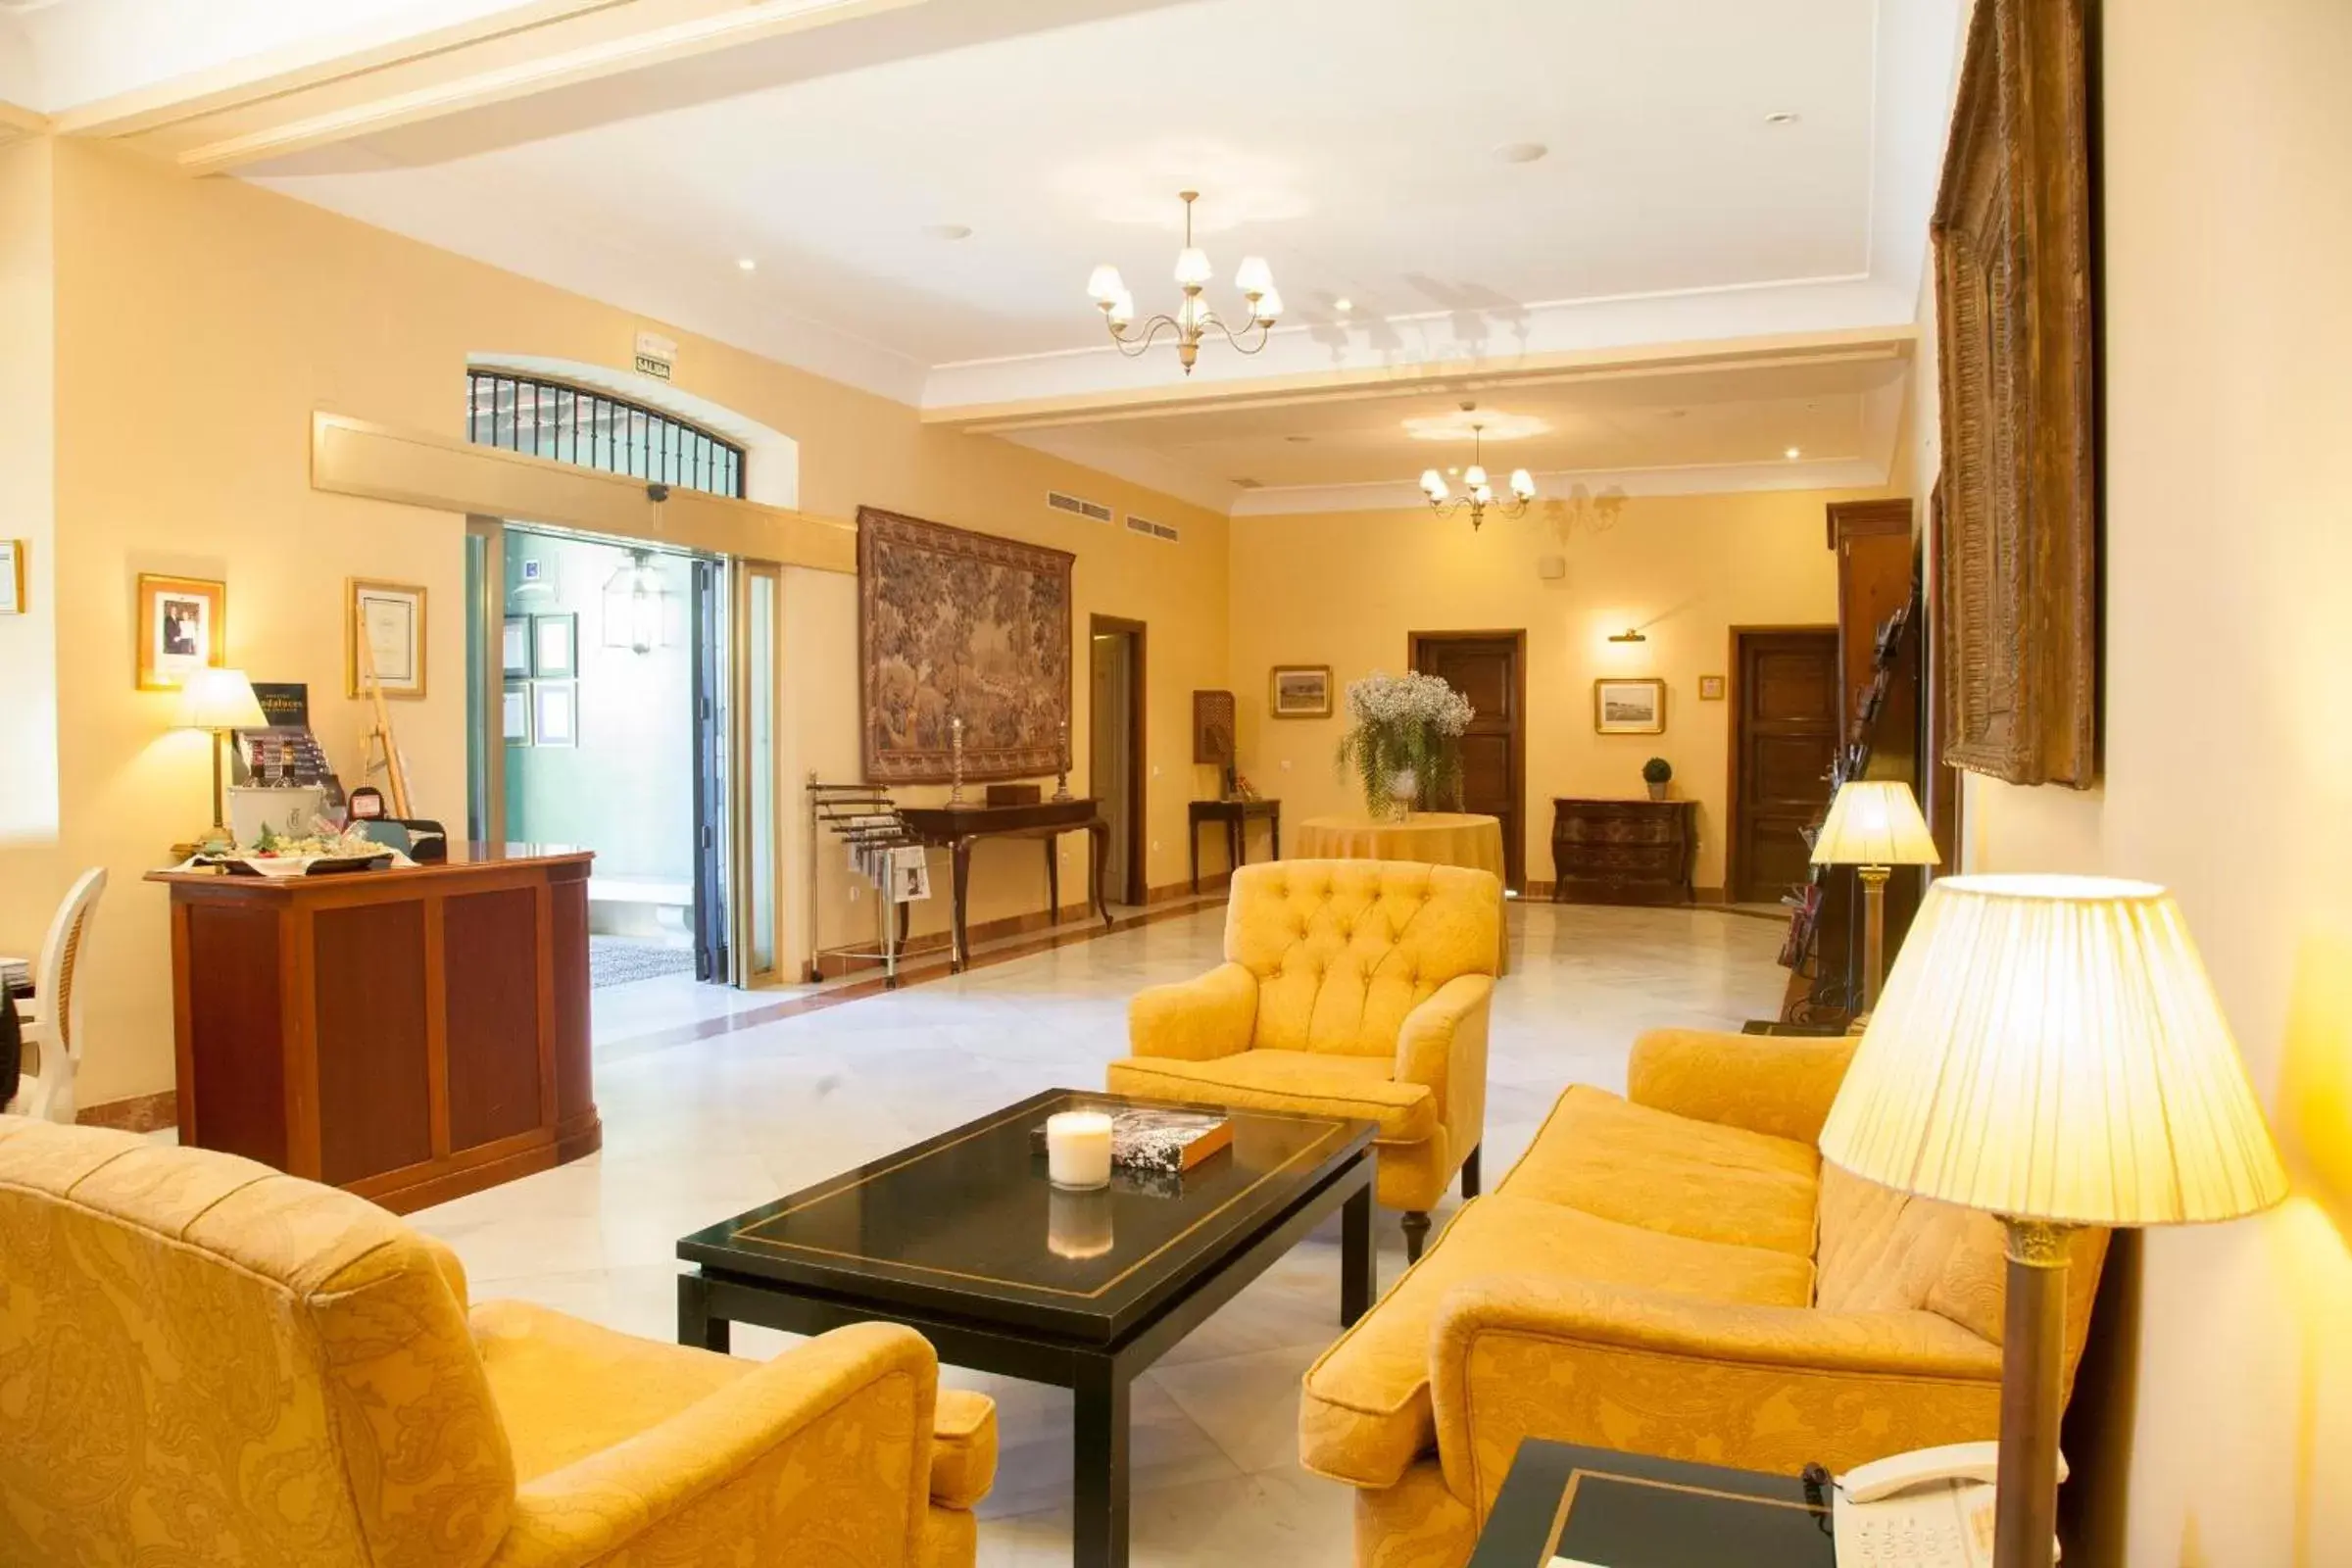 Lobby or reception, Lobby/Reception in Villa Jerez